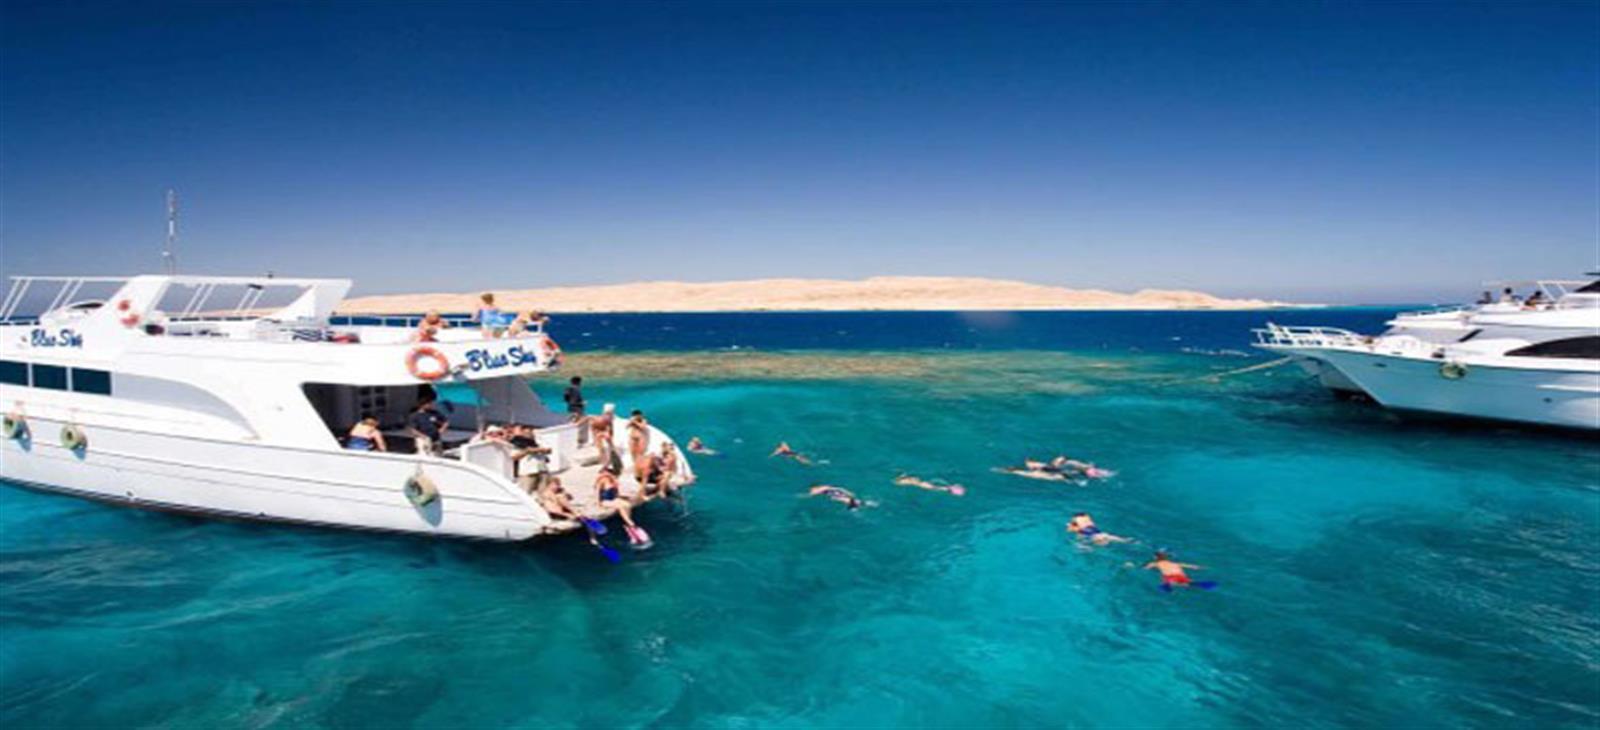 tiran island snorkeling cruise